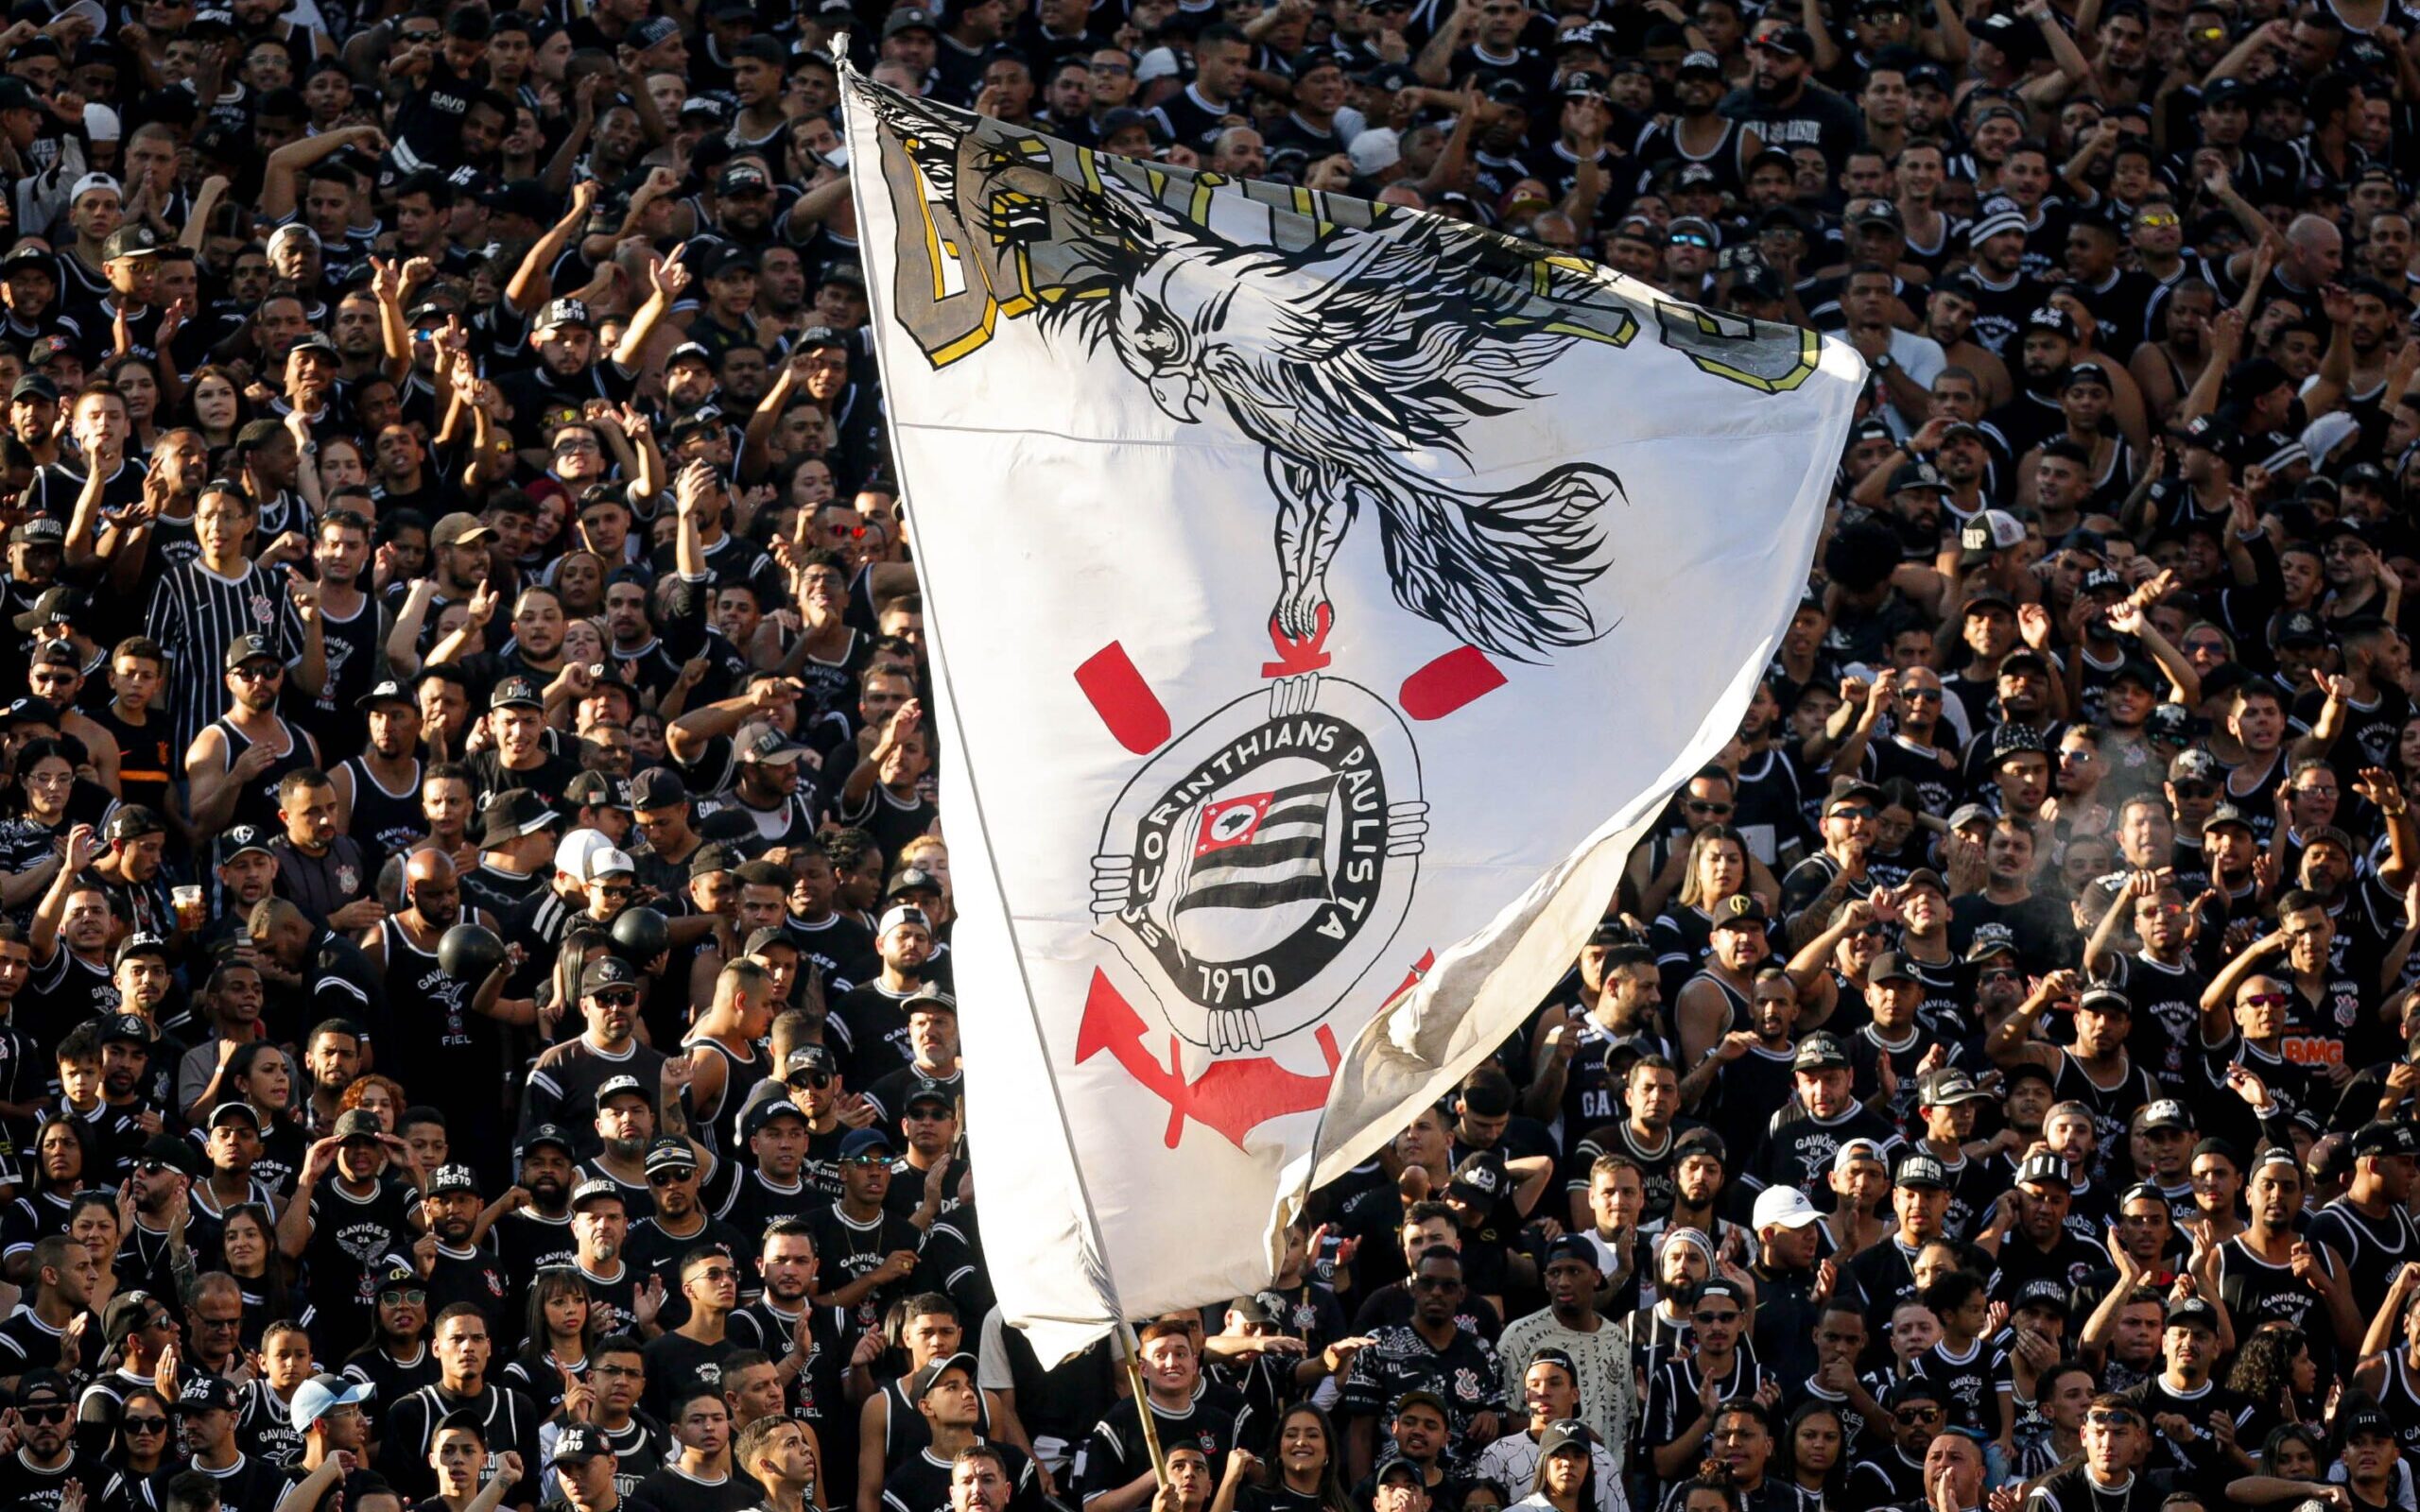 Corinthians - Vamos jogar com raça e com o coração! - Série Cantos da Fiel  